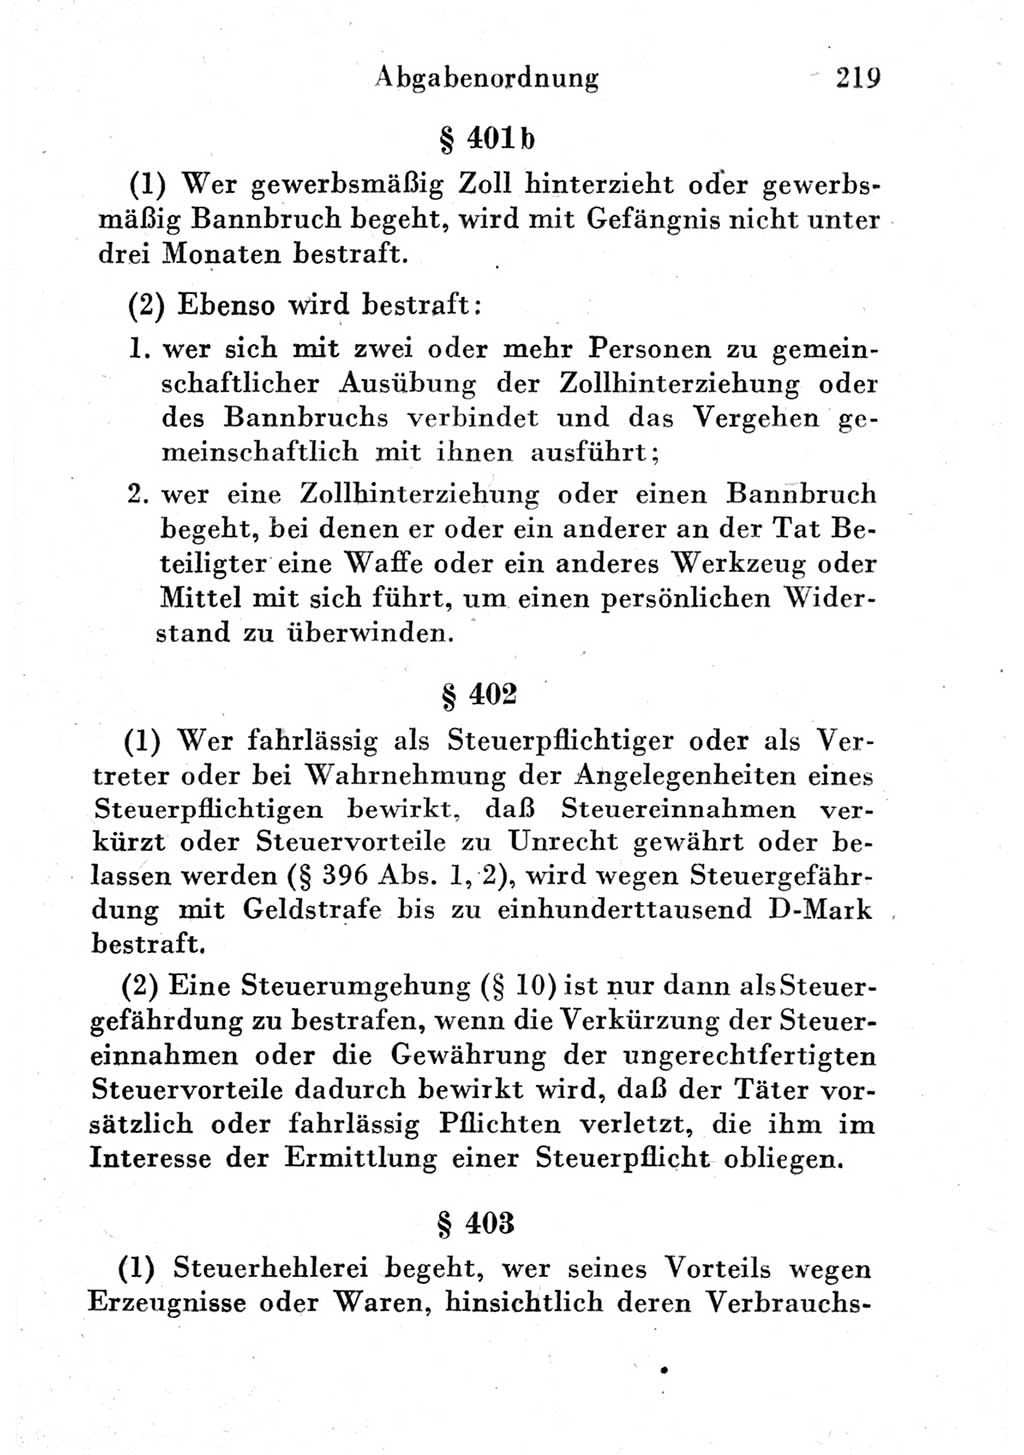 Strafgesetzbuch (StGB) und andere Strafgesetze [Deutsche Demokratische Republik (DDR)] 1951, Seite 219 (StGB Strafges. DDR 1951, S. 219)